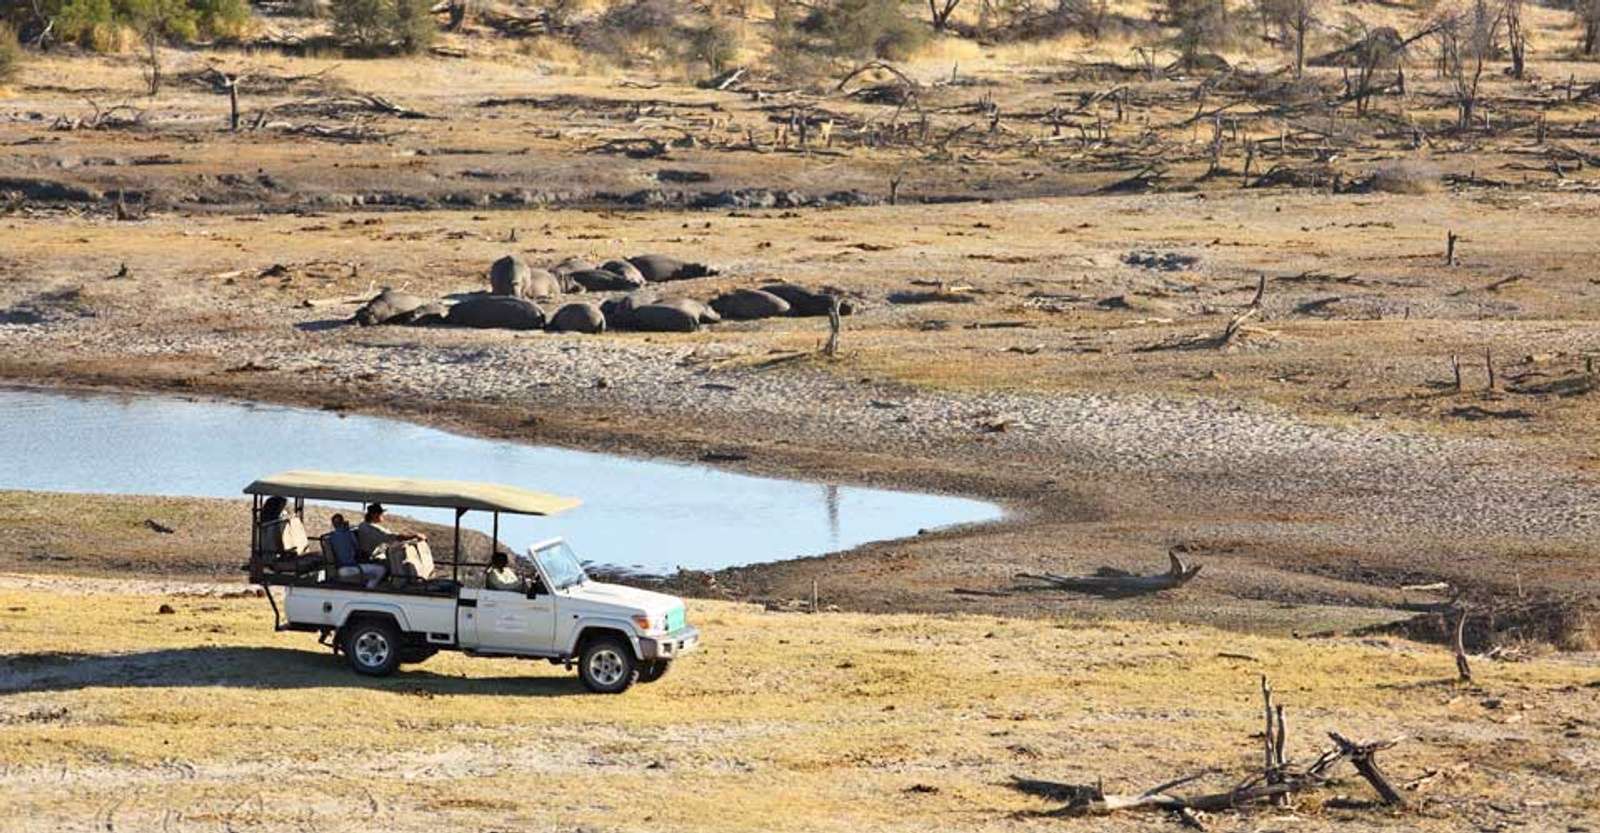 Hippos and safari vehicle, Meno a Kwena, Botswana.